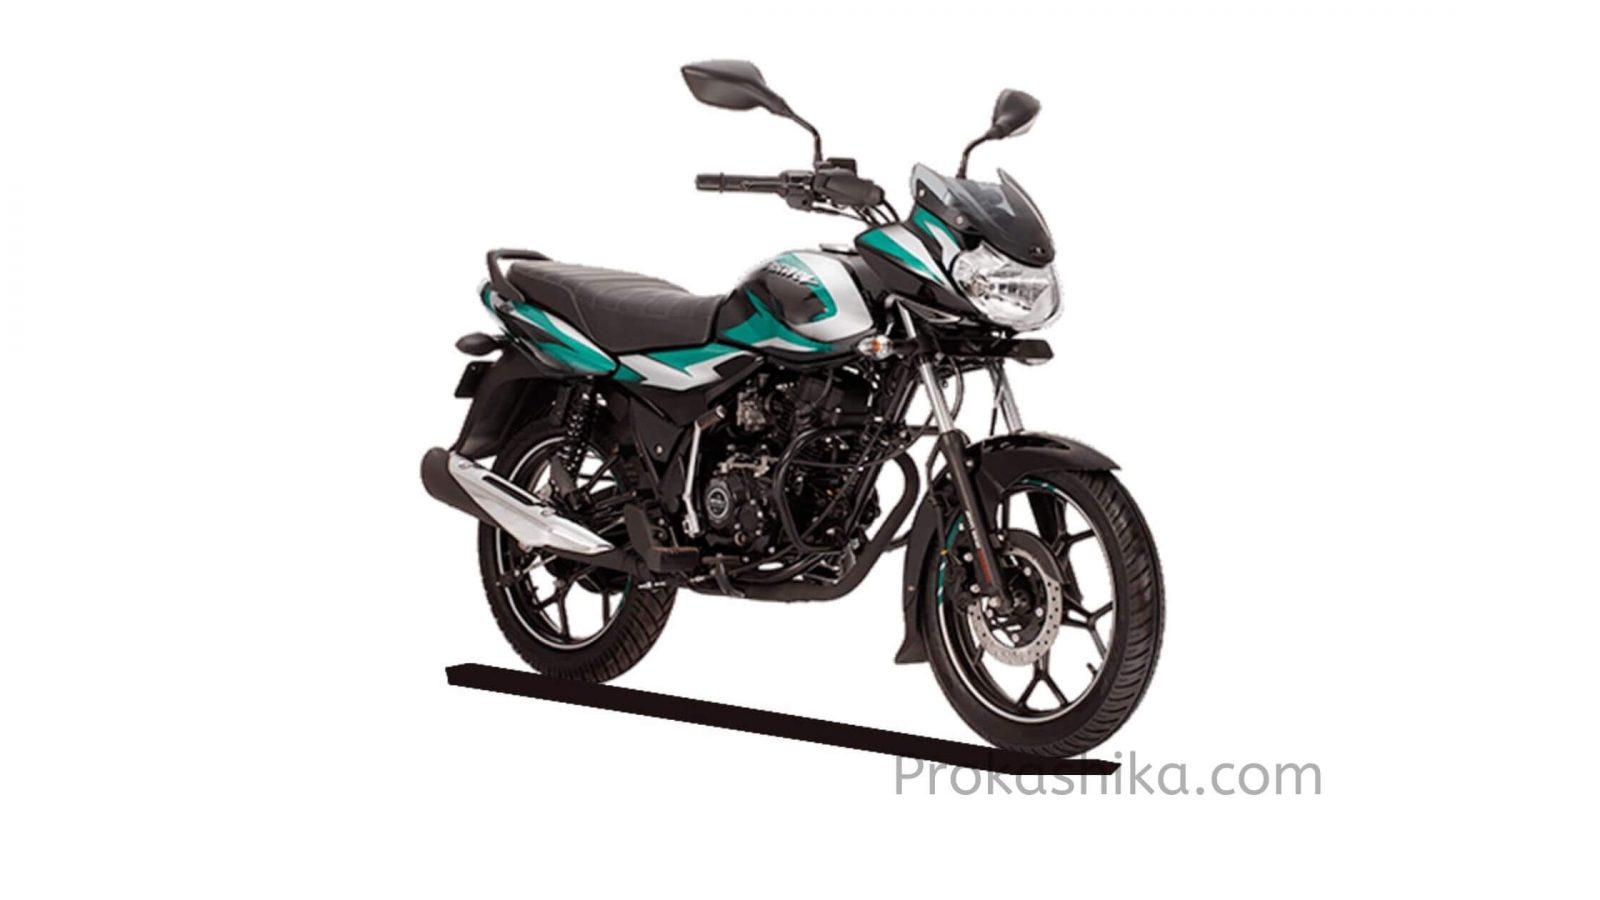 Bajaj Motorcycle Price in Bangladesh